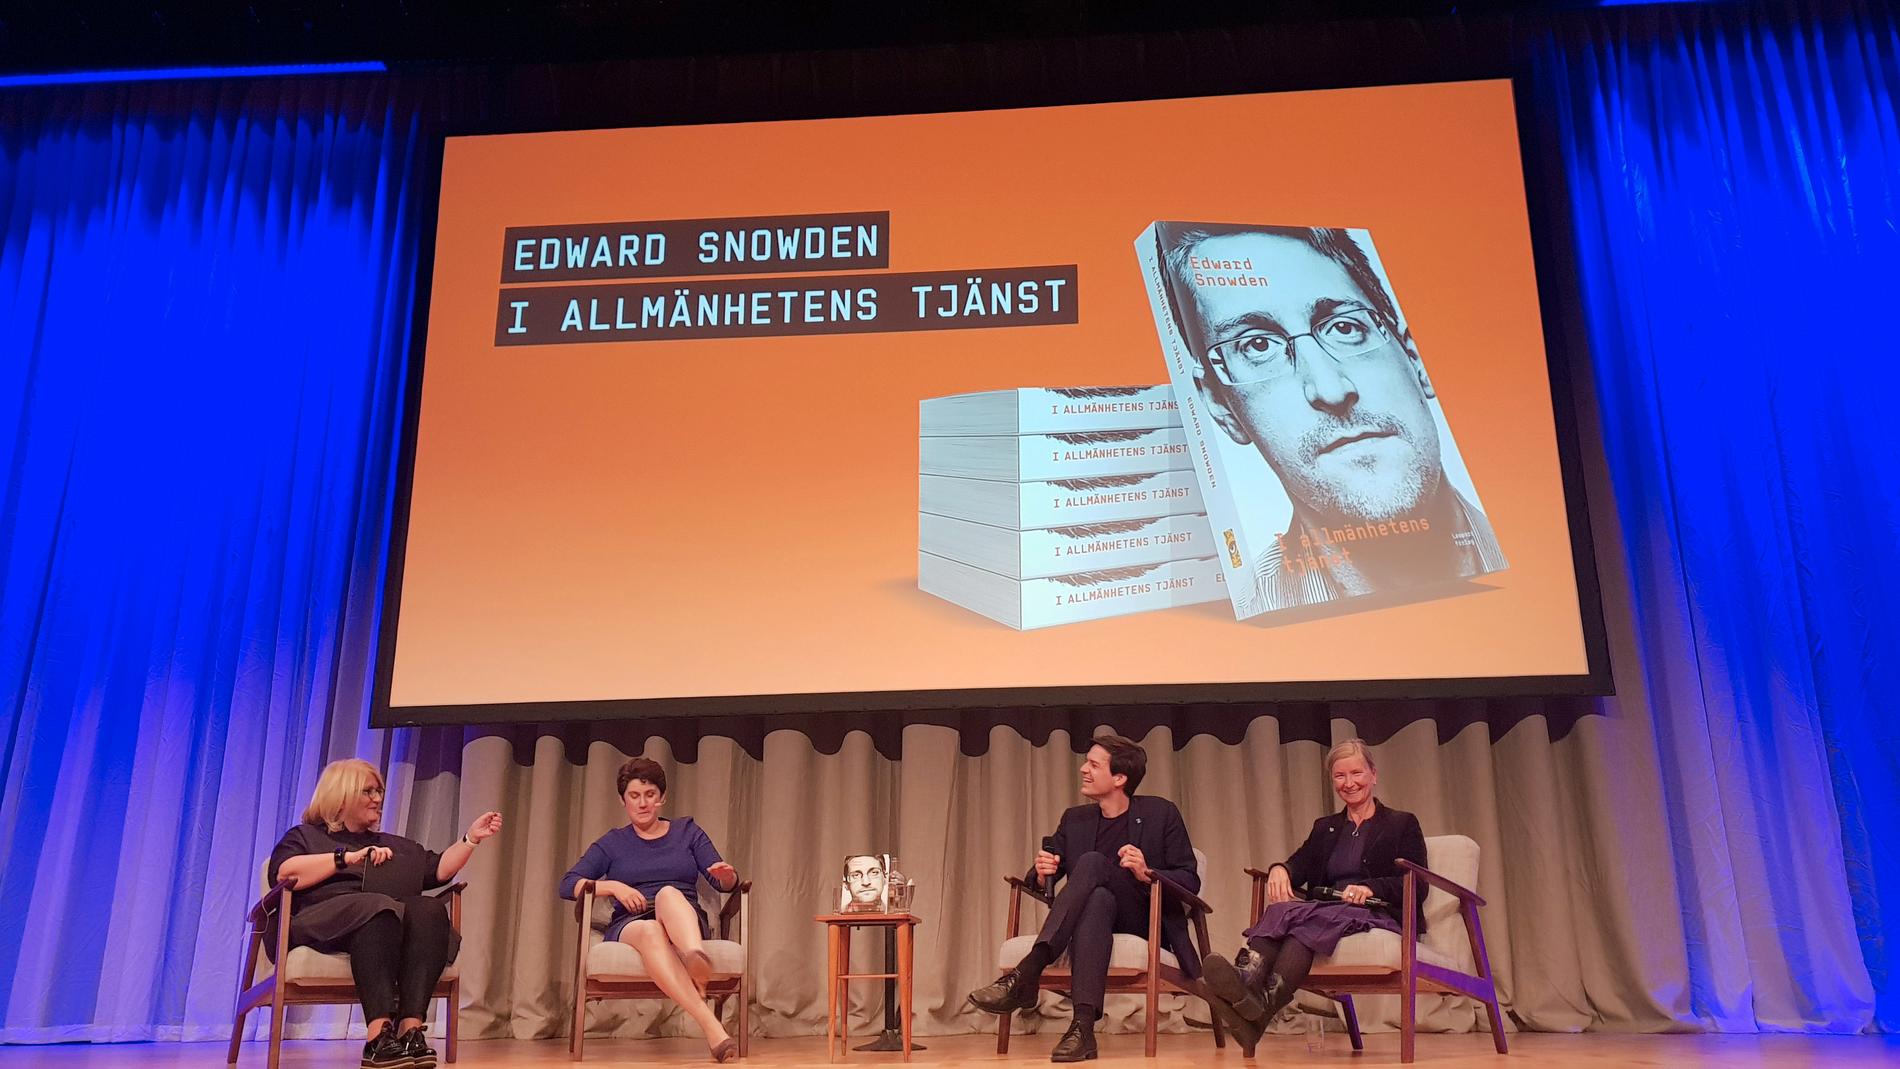 Intresset var stort när Edward Snowdens biografi "I allmänhetens tjänst" släpptes på Rivals stora scen i Stockholm.